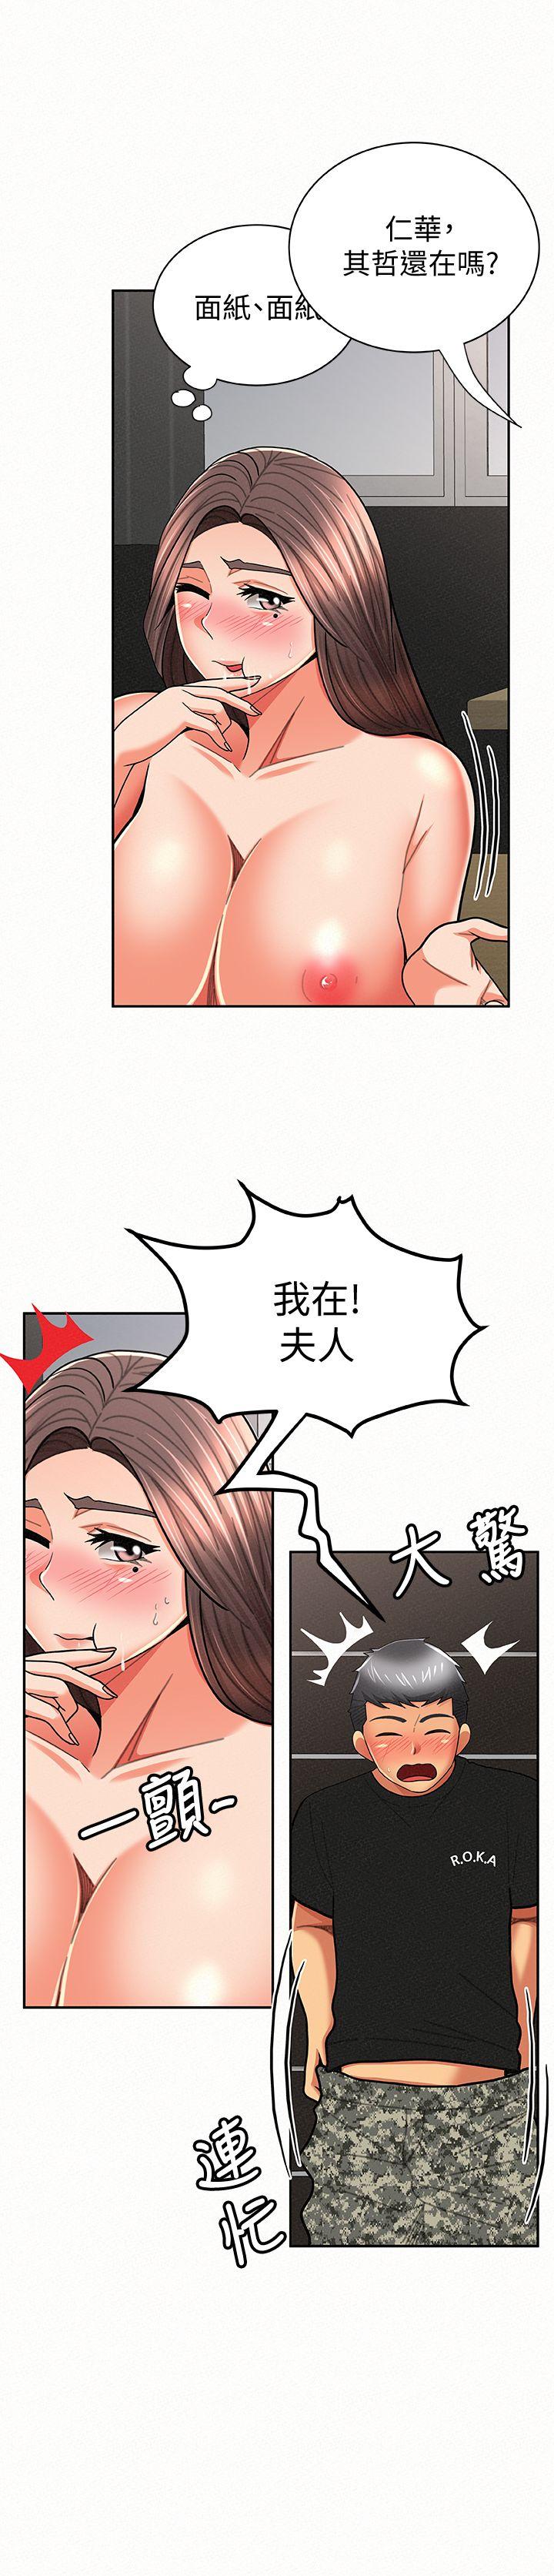 韩国污漫画 報告夫人 第23话-夫人逐渐加深的怀疑 18